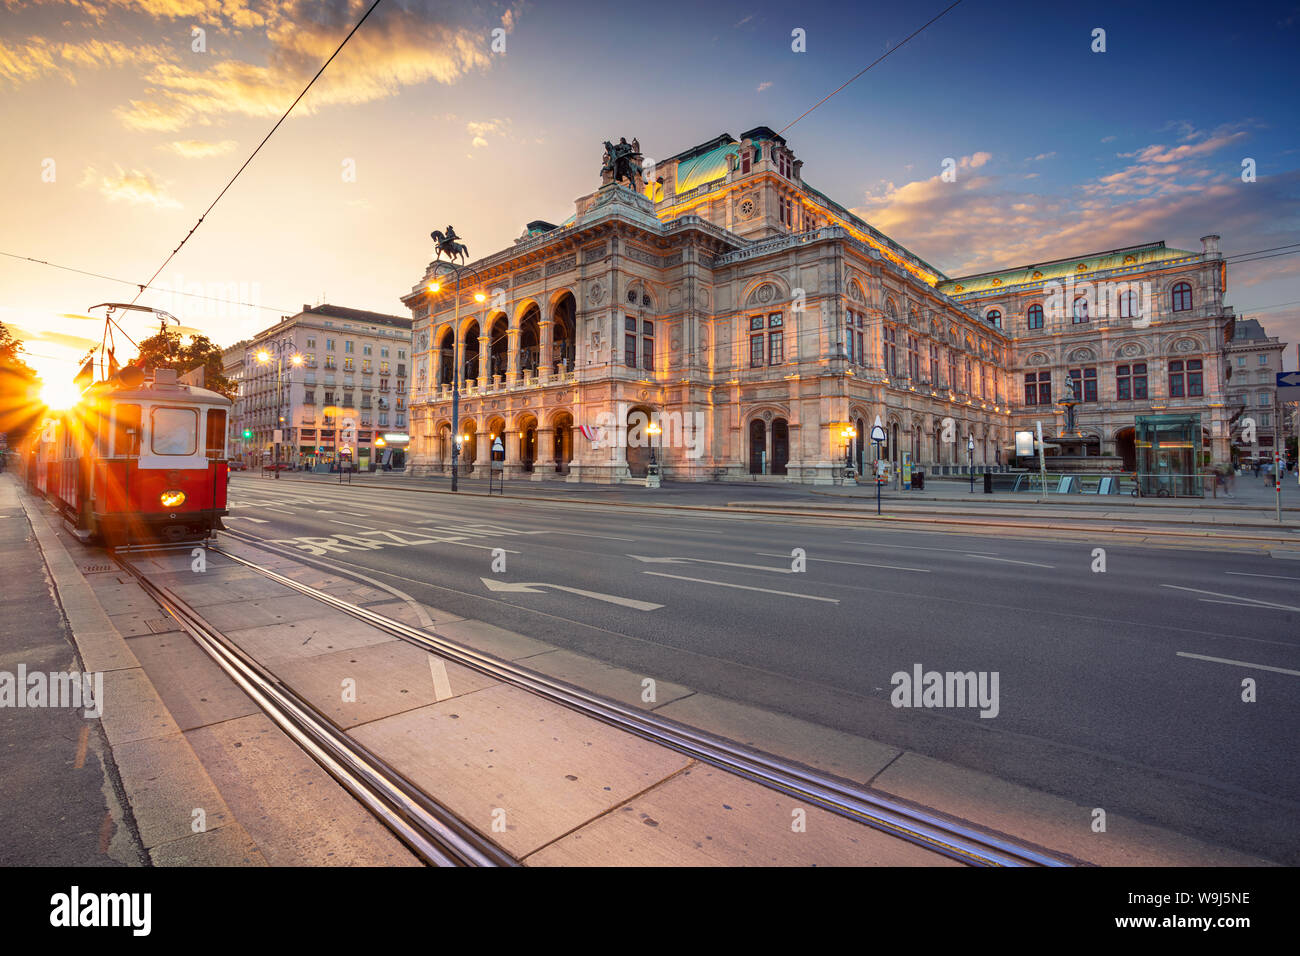 Vienne, Autriche. Cityscape image de Vienne avec l'Opéra de Vienne pendant le coucher du soleil. Banque D'Images